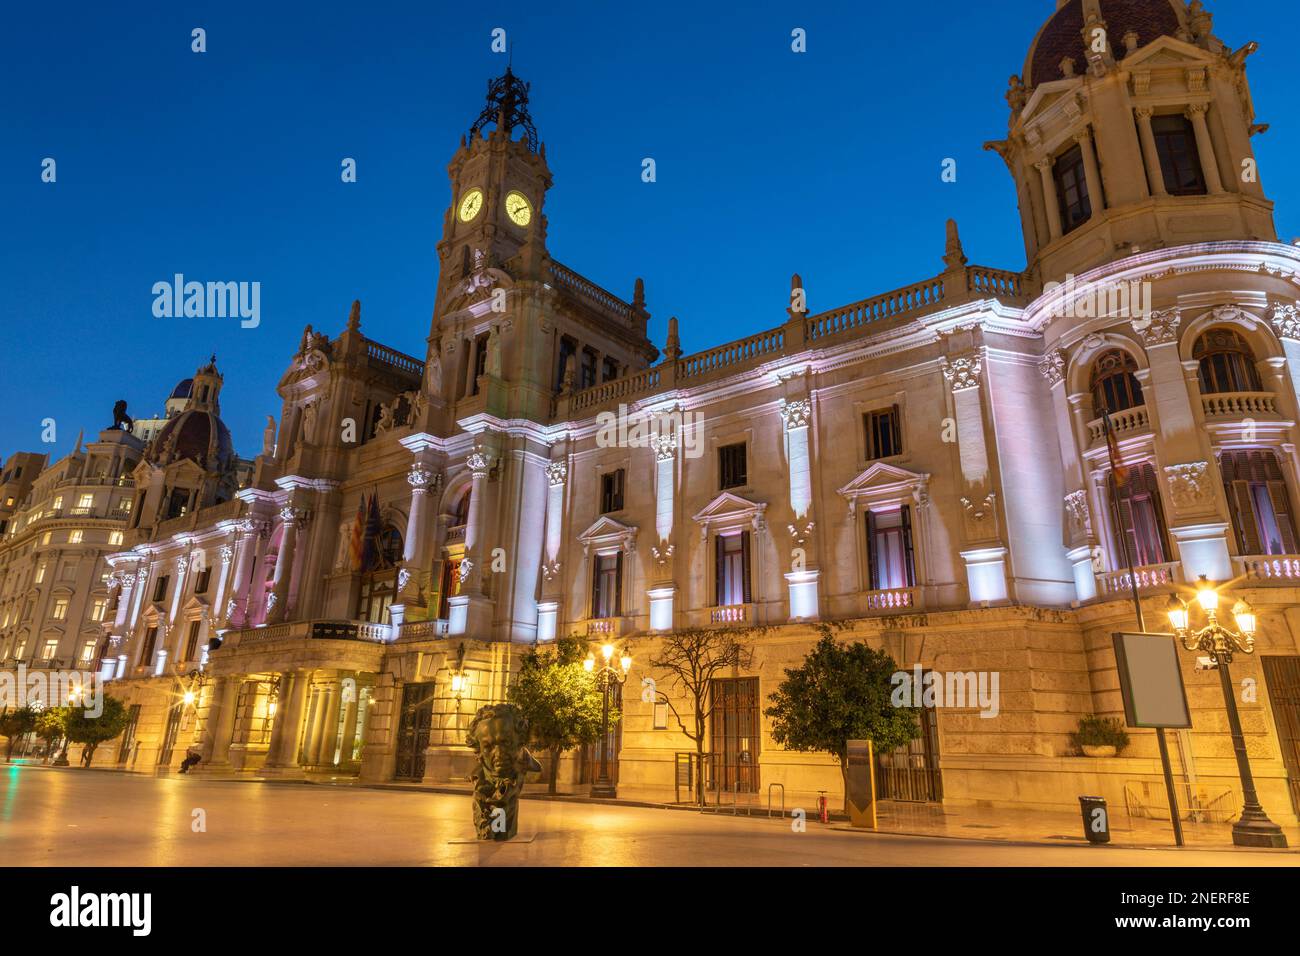 Valencia - The builiding Ayuntamiento de Valencia at dusk. Stock Photo